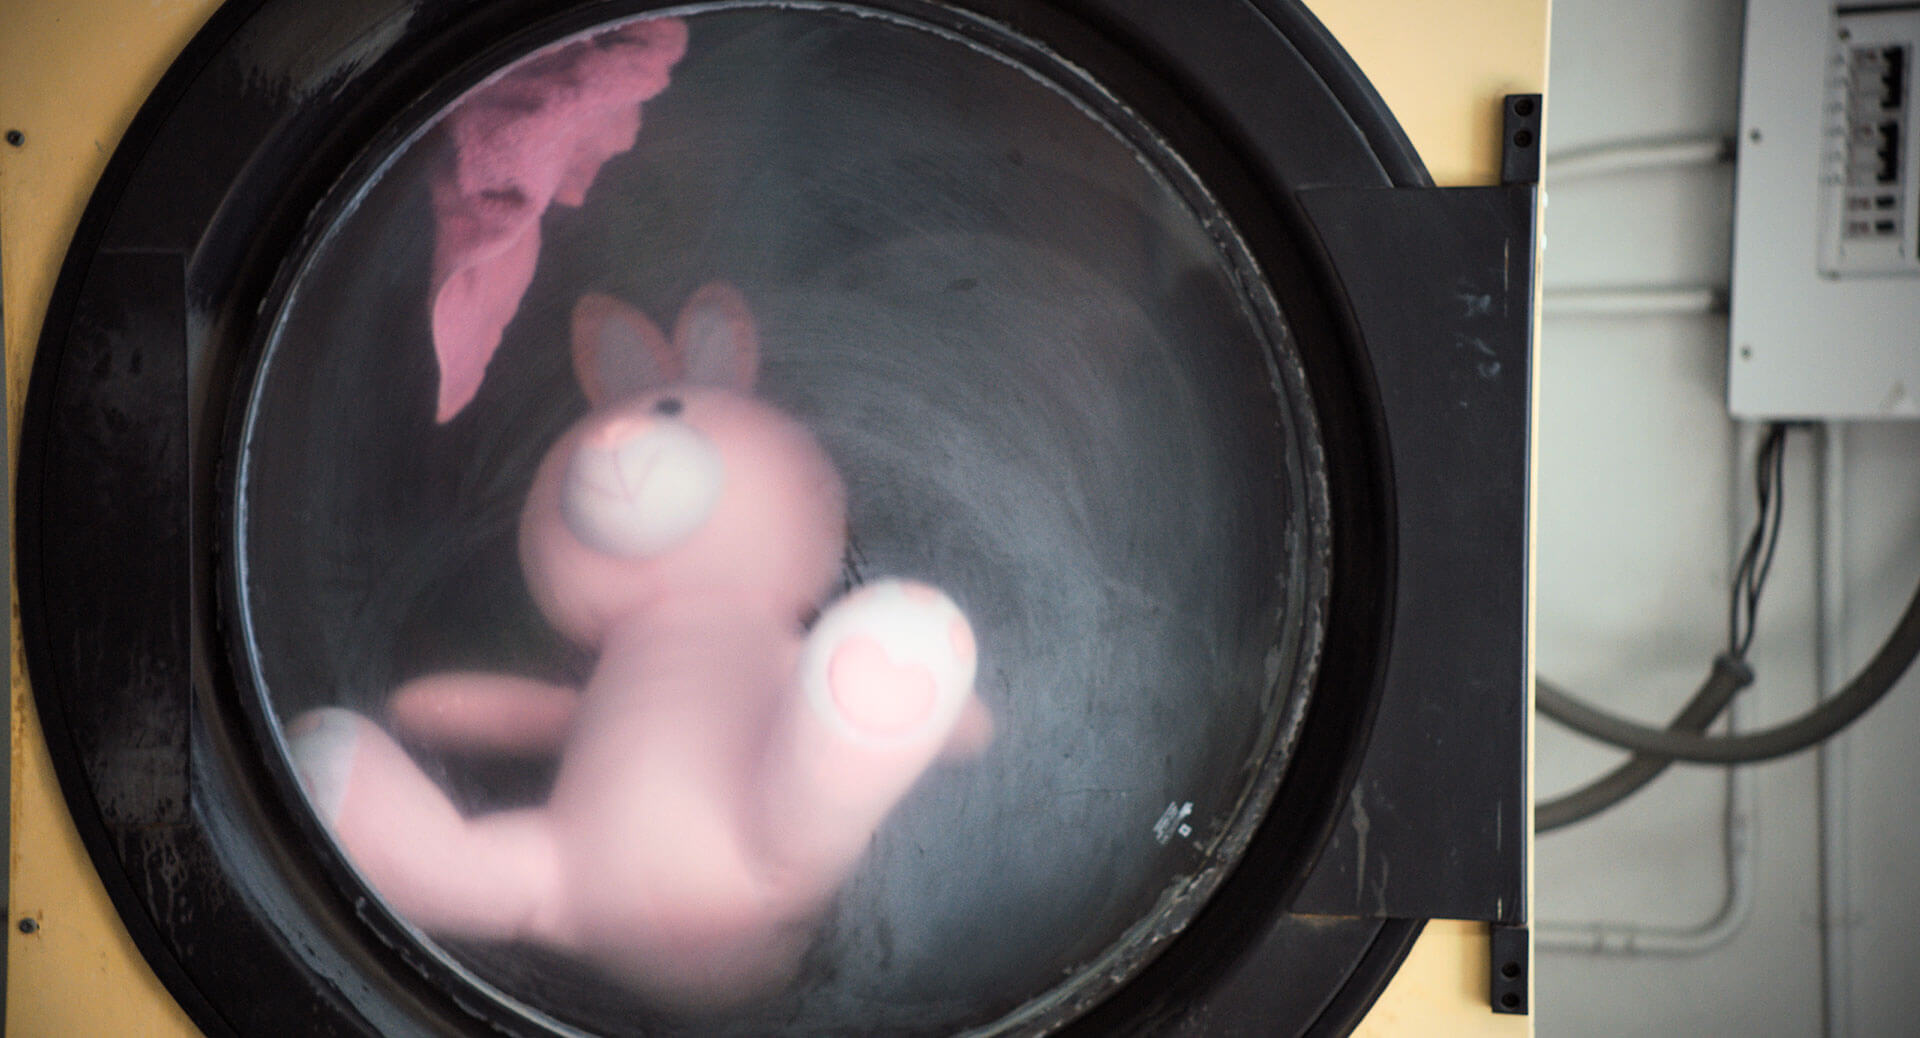 Close-up of a stuffed animal inside of a washing machine